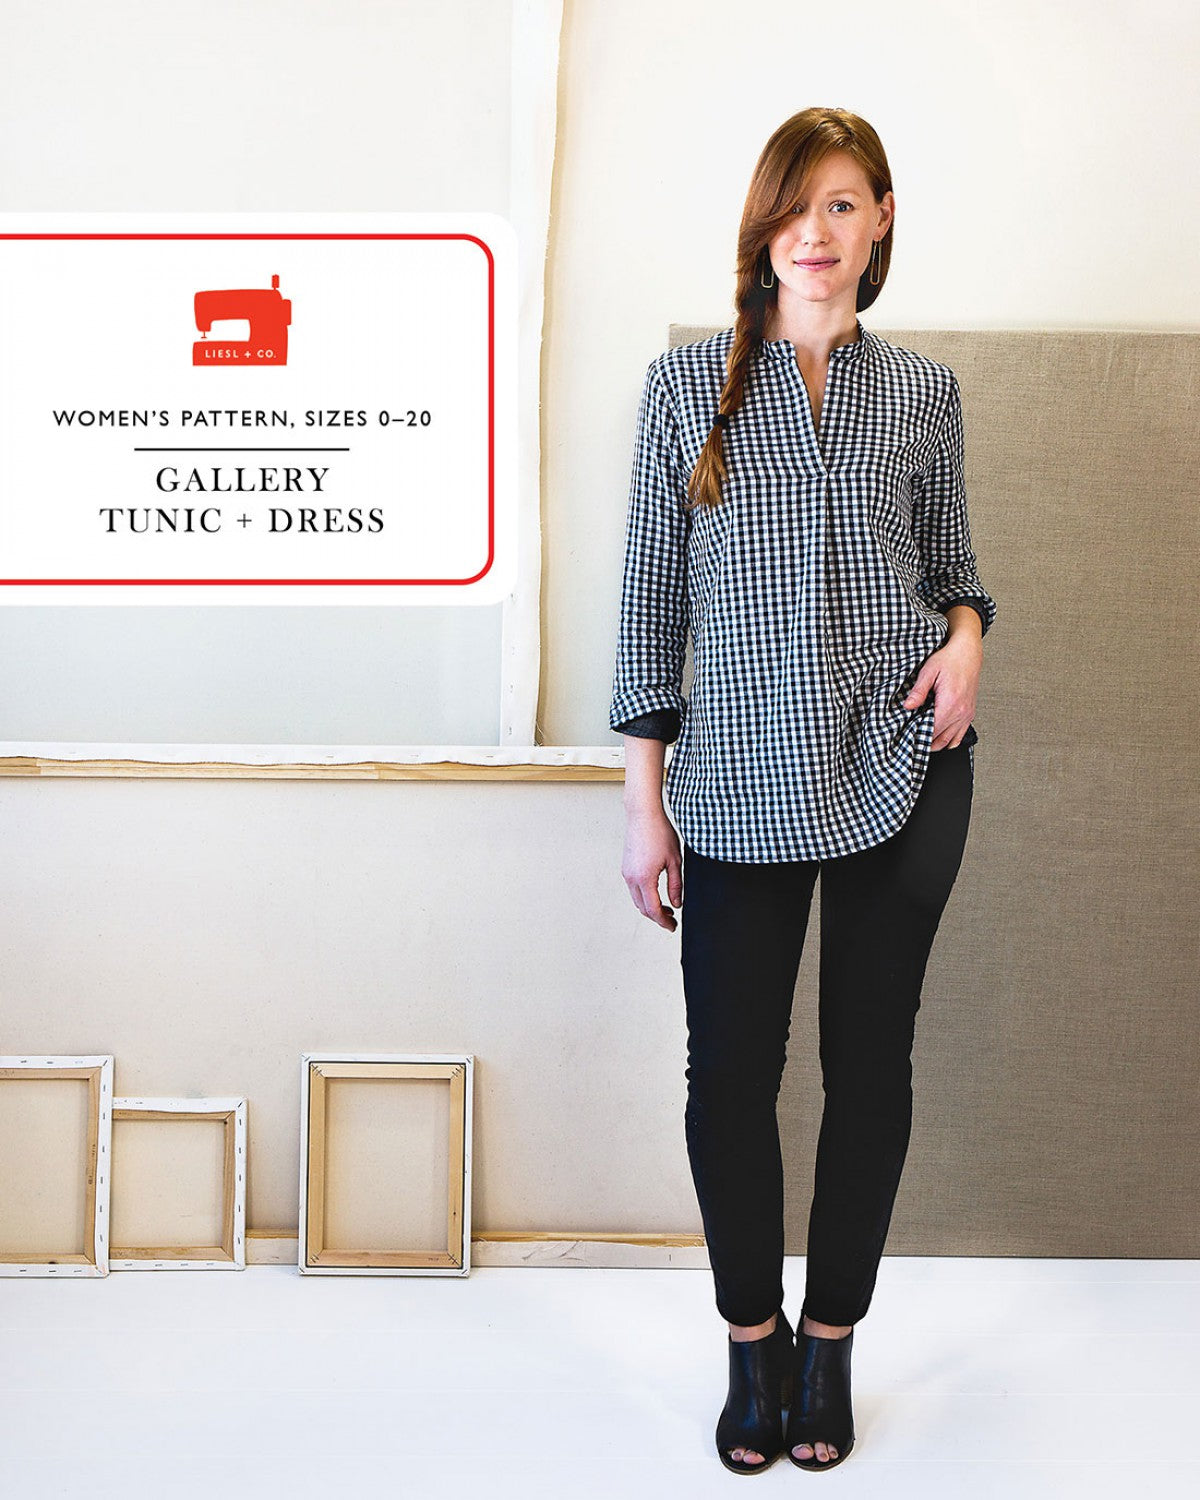 Liesl + Co - Gallery Tunic & Dress Sewing Pattern